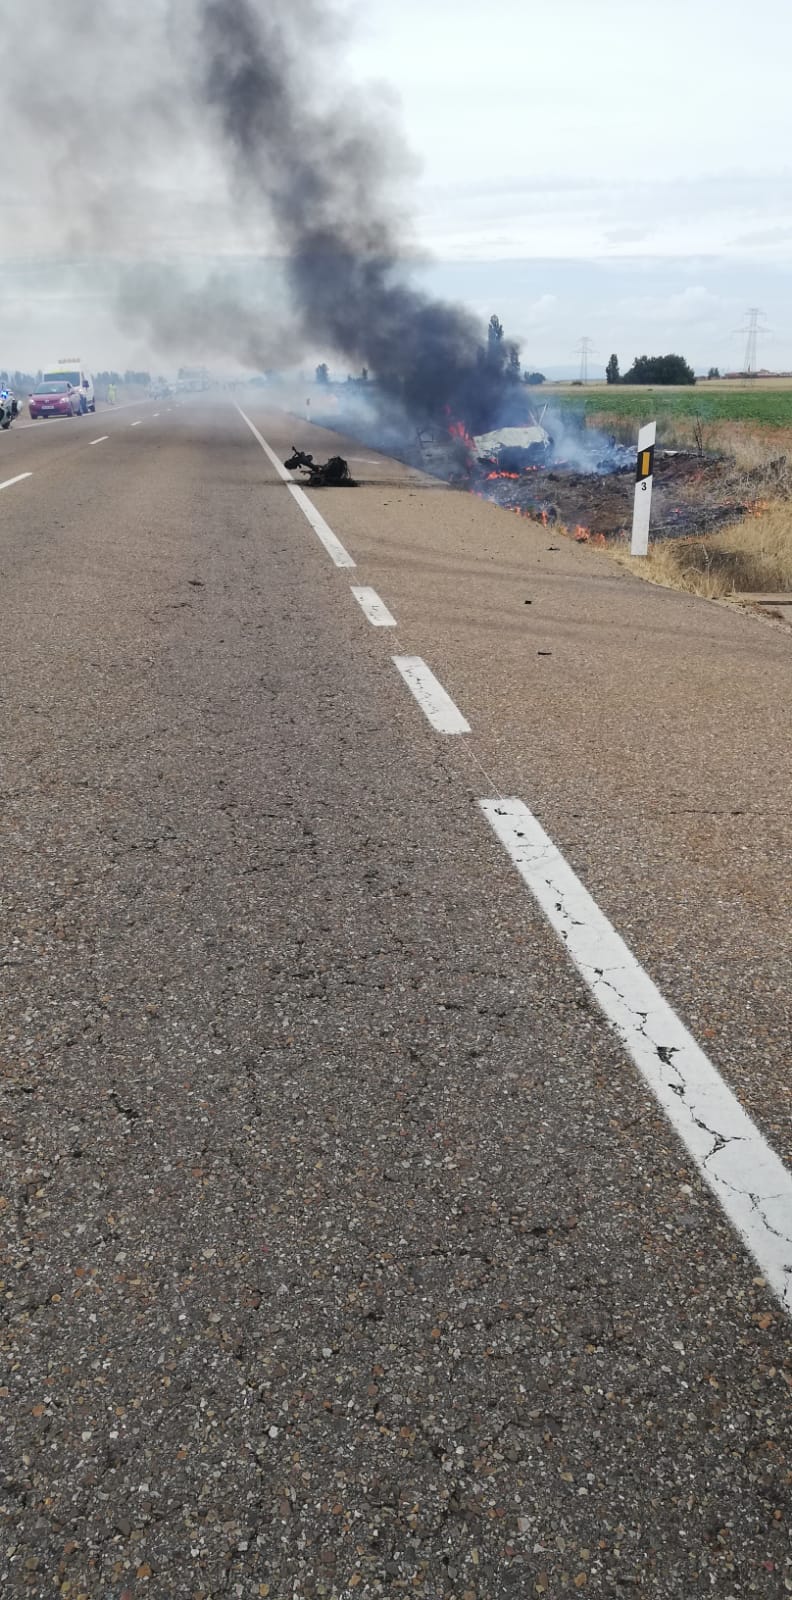 Fotos: El fuego devora un vehículo tras una salida de vía en la N-601 y su conductor resultado herido